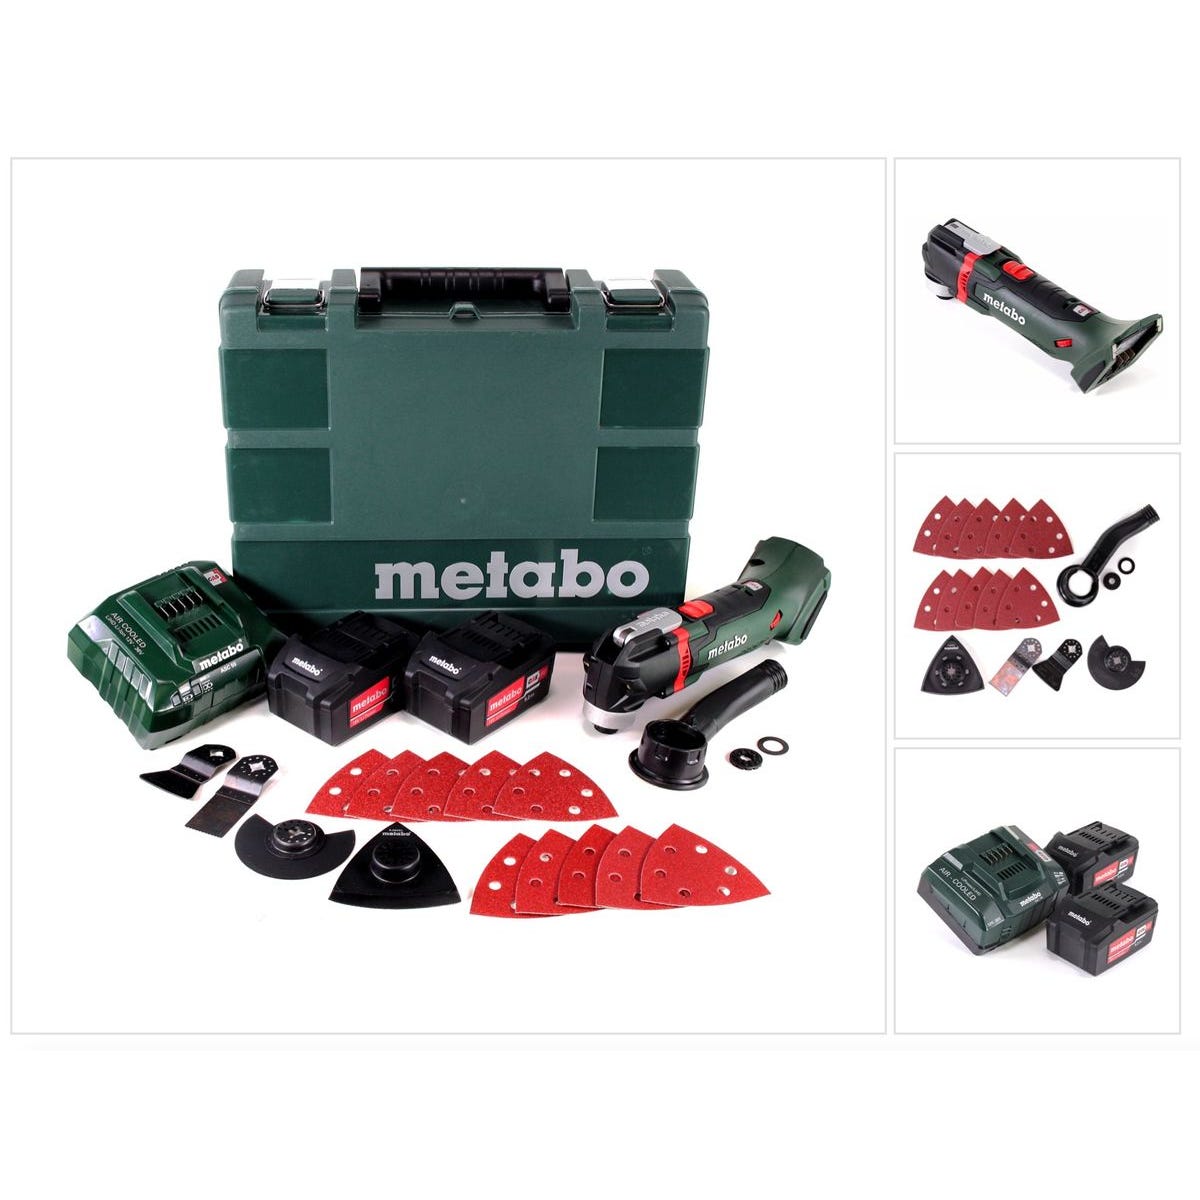 Metabo - Outil Multifonctions Sans Fil 18 V 2x5.2 Ah Li-ion 7000-18000 Osc/min Avec Coffret - Mt 18 Ltx 4